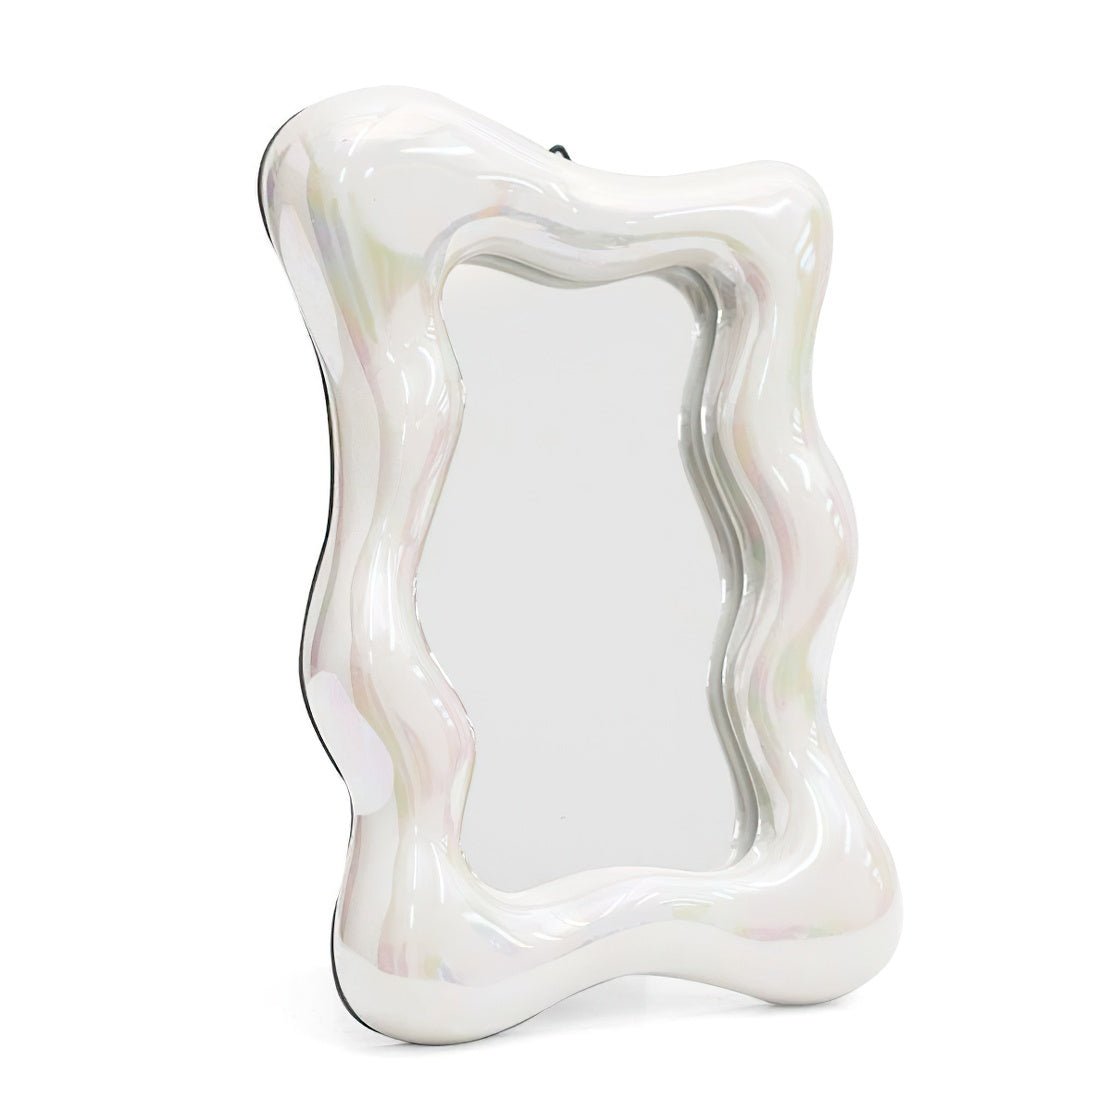 White asymmetrical frame table mirror